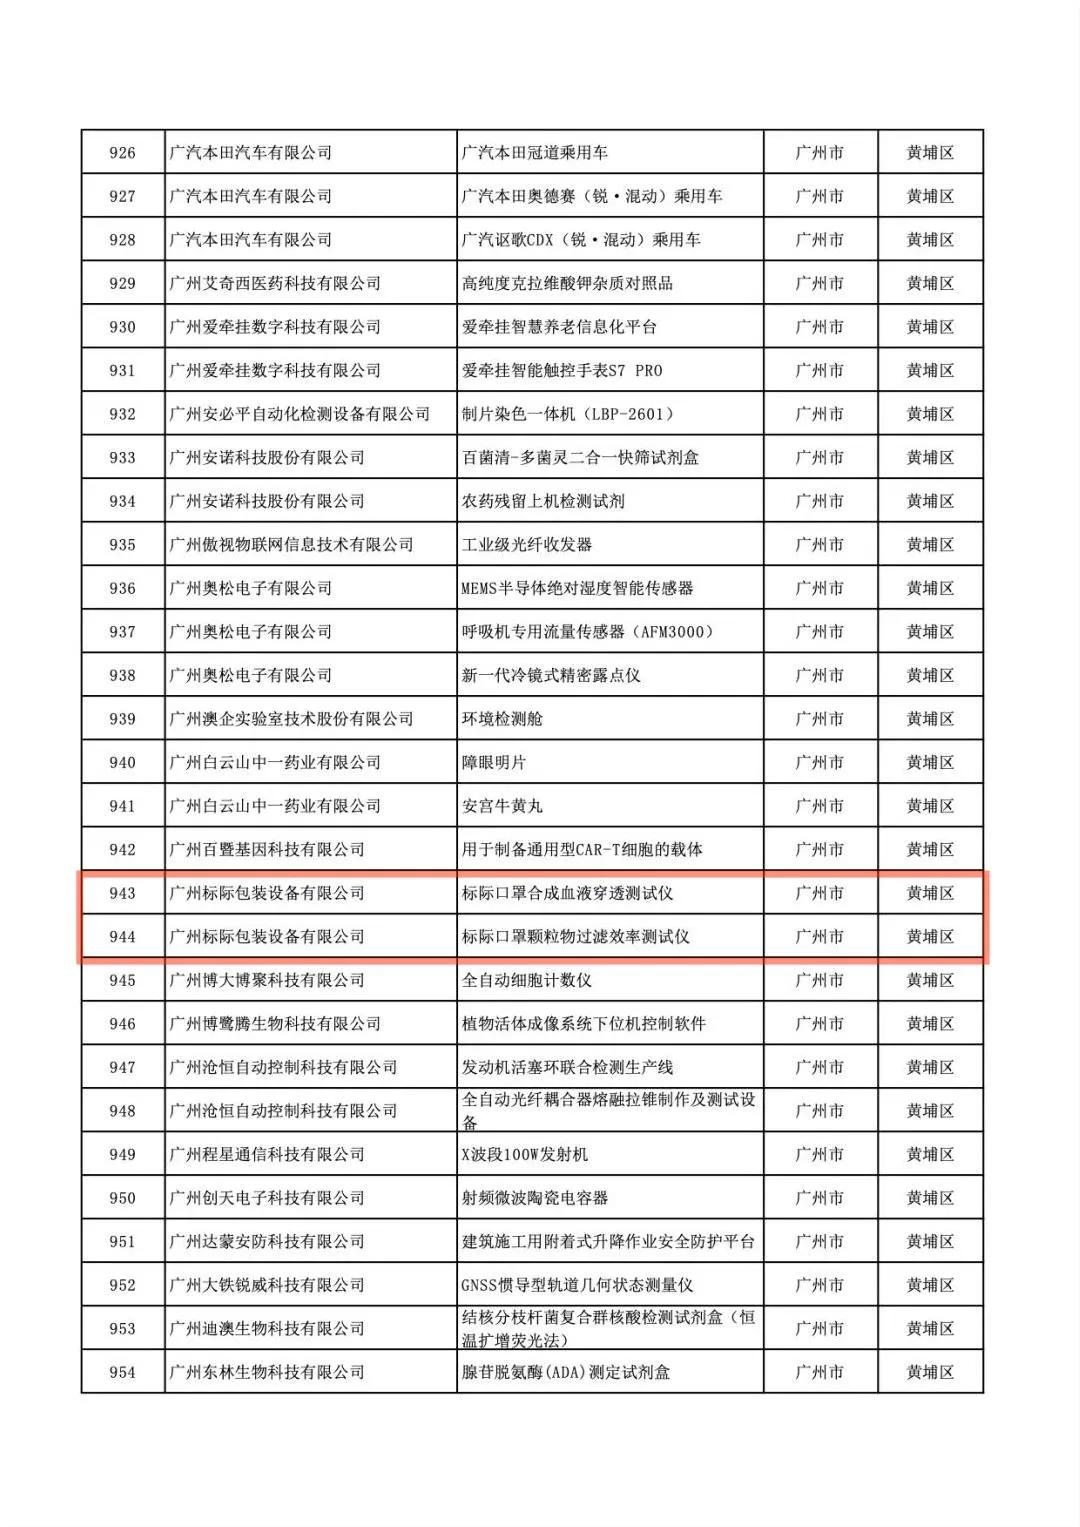 「喜讯连连」热烈祝贺我司产品又获得广东省高新技术产品评定